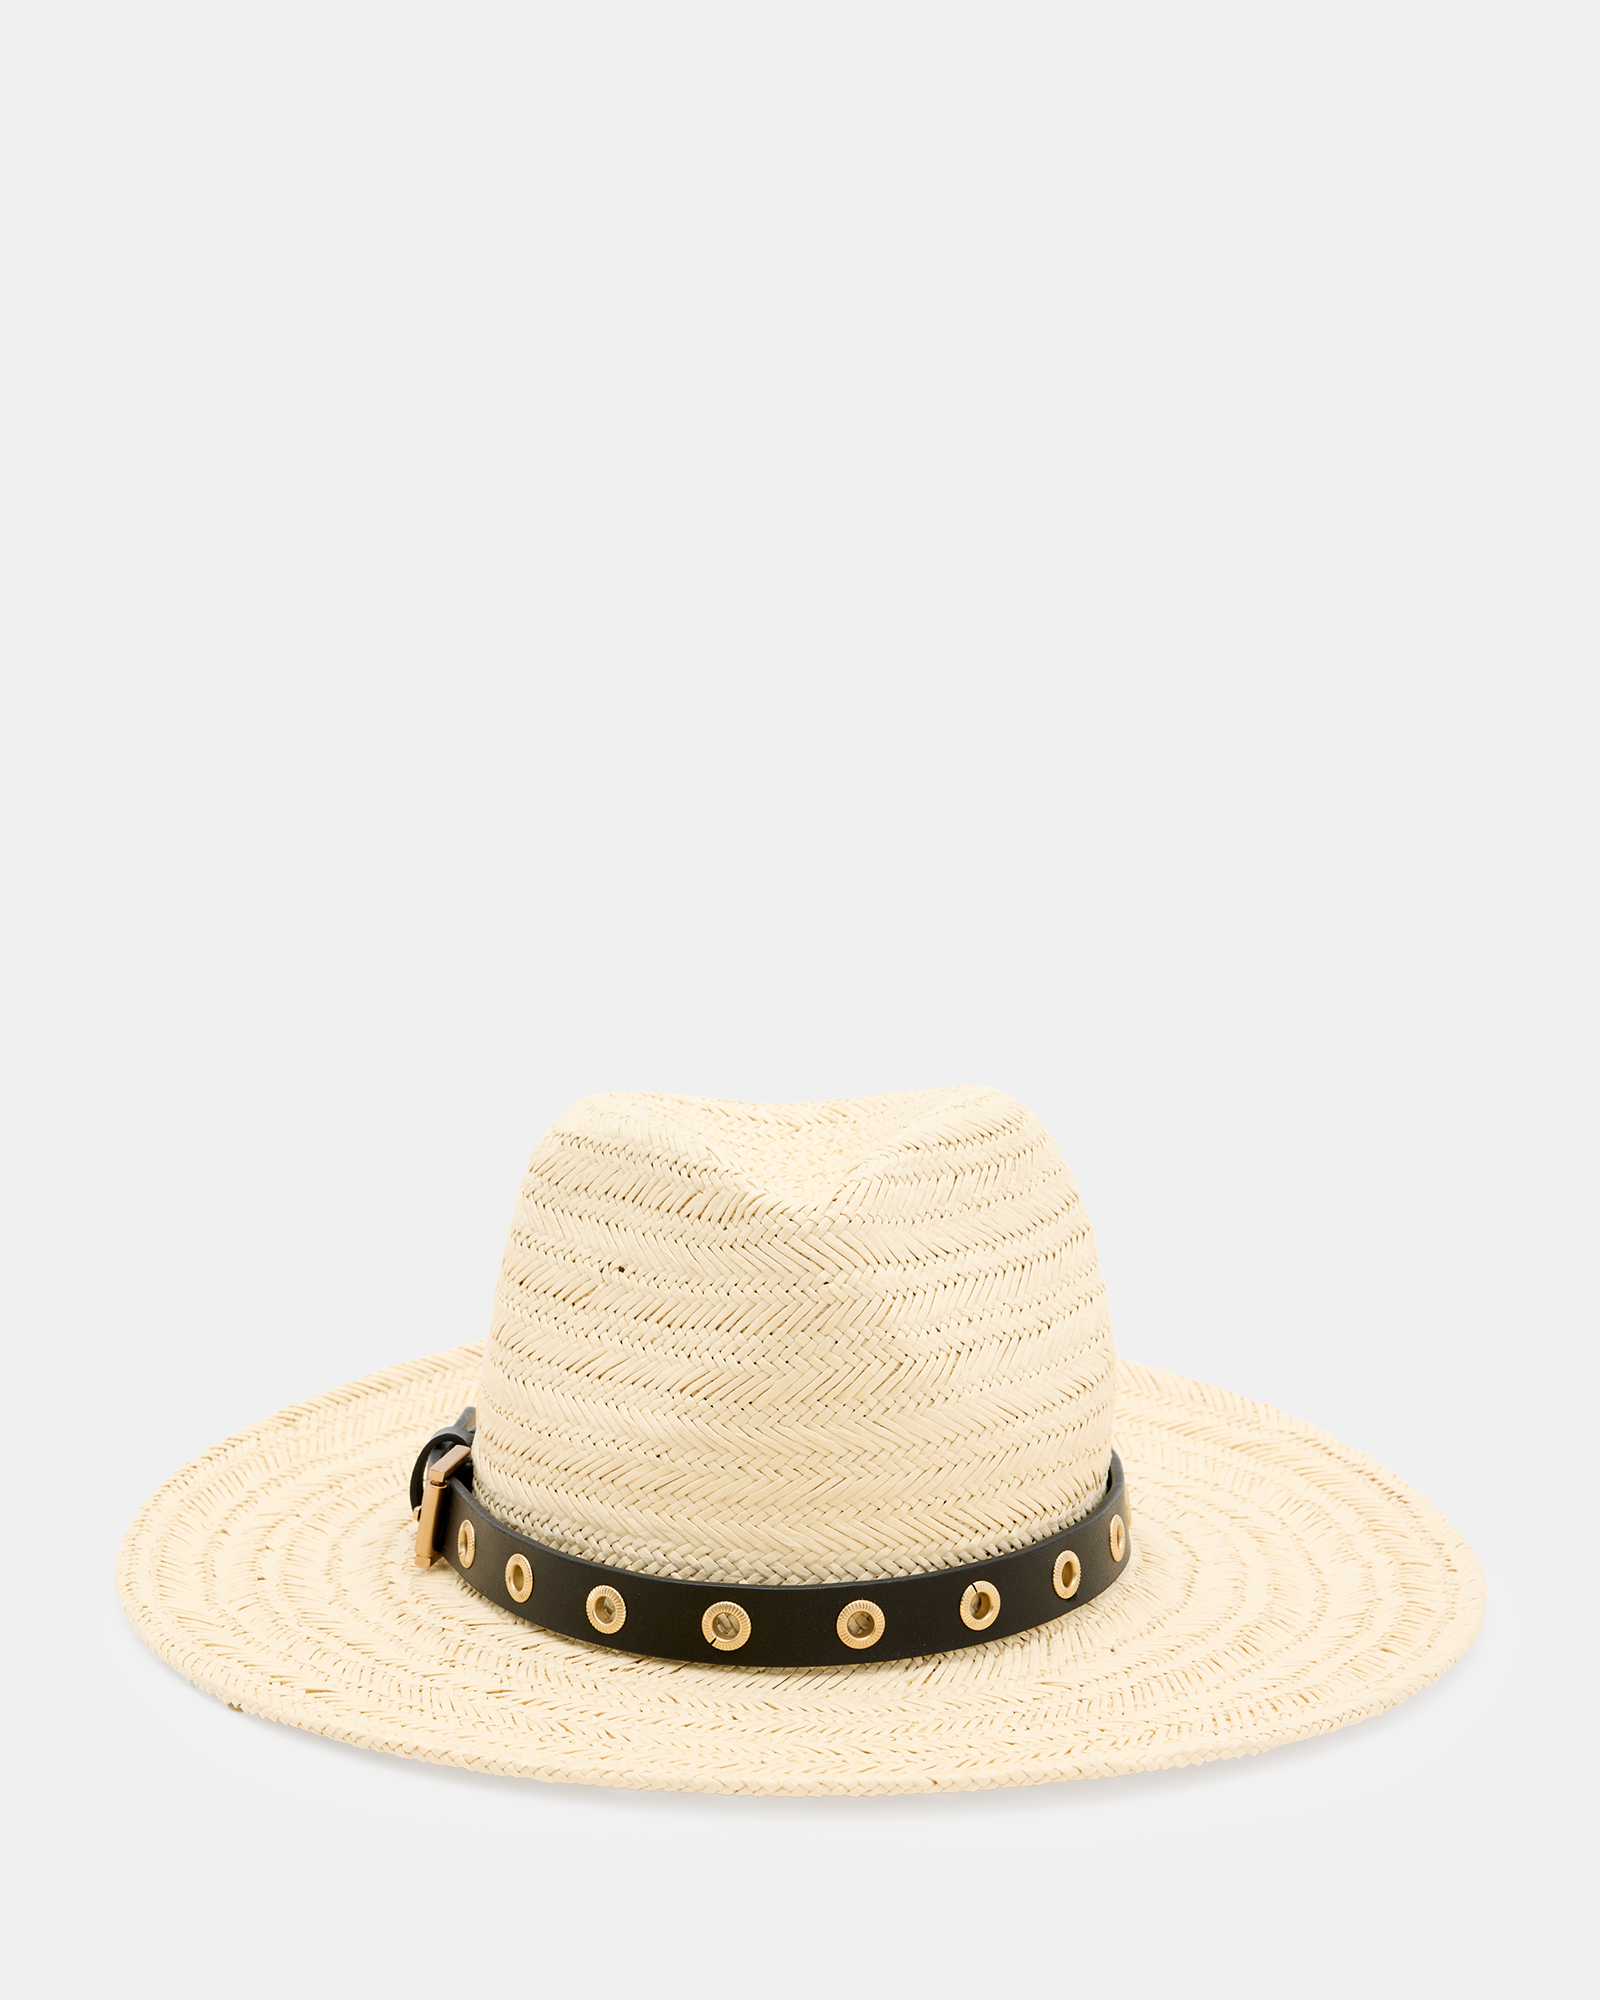 AllSaints Delilah Straw Fedora Eyelet Hat,, Natural/Black